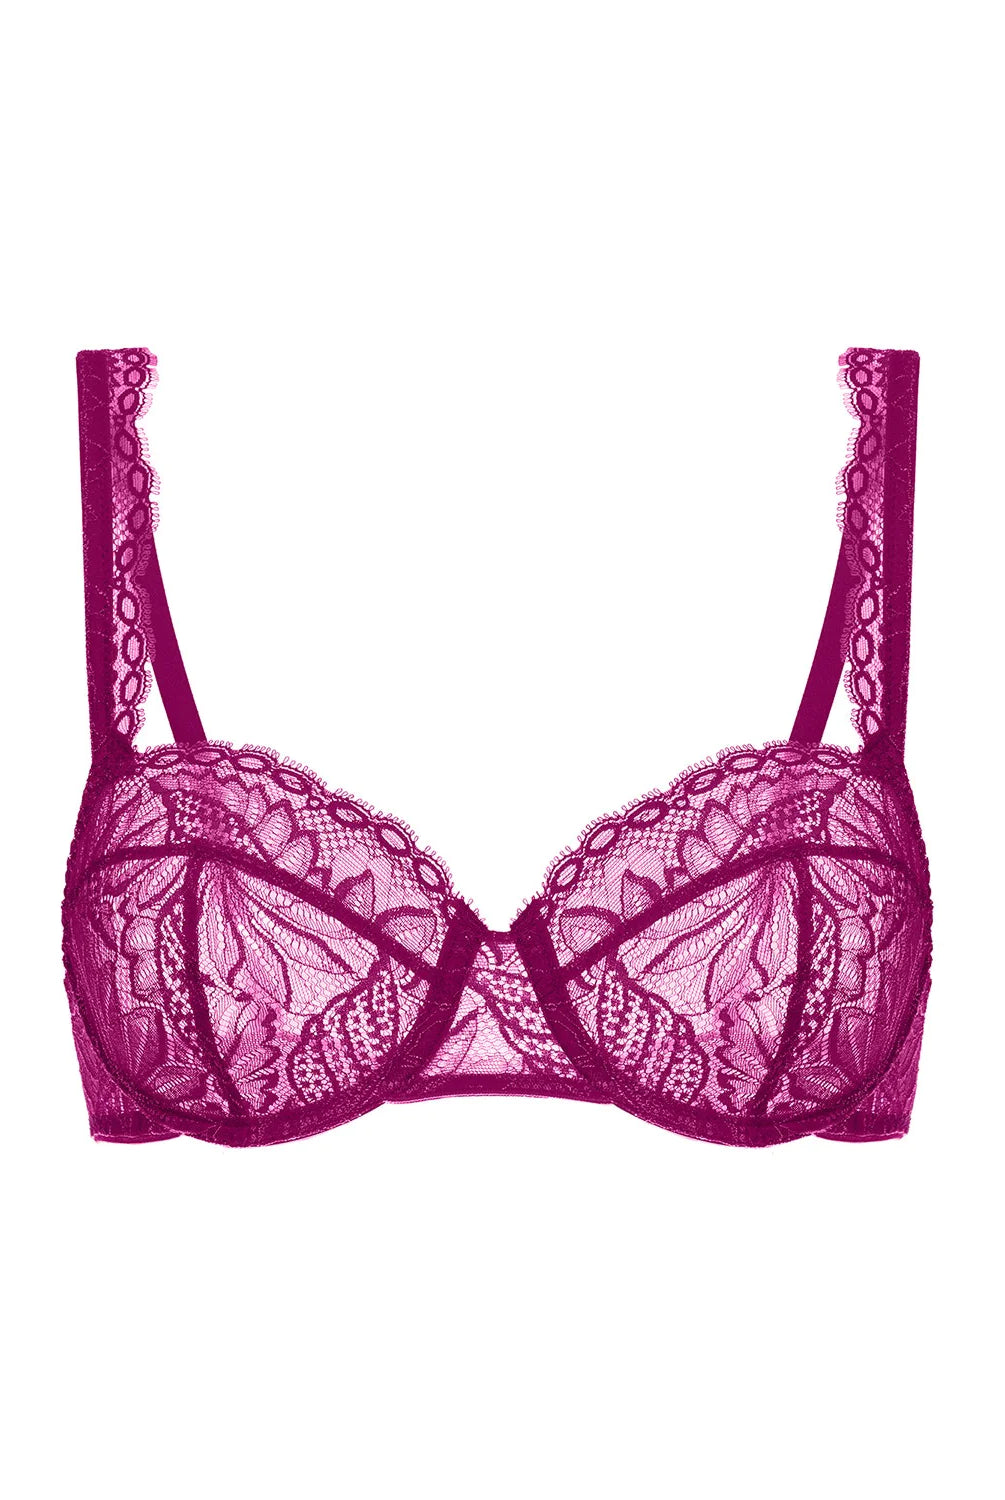 Exotica Sheer Demi Bra - Raspberry - Flirt! Luxe Lingerie & Sleepwear